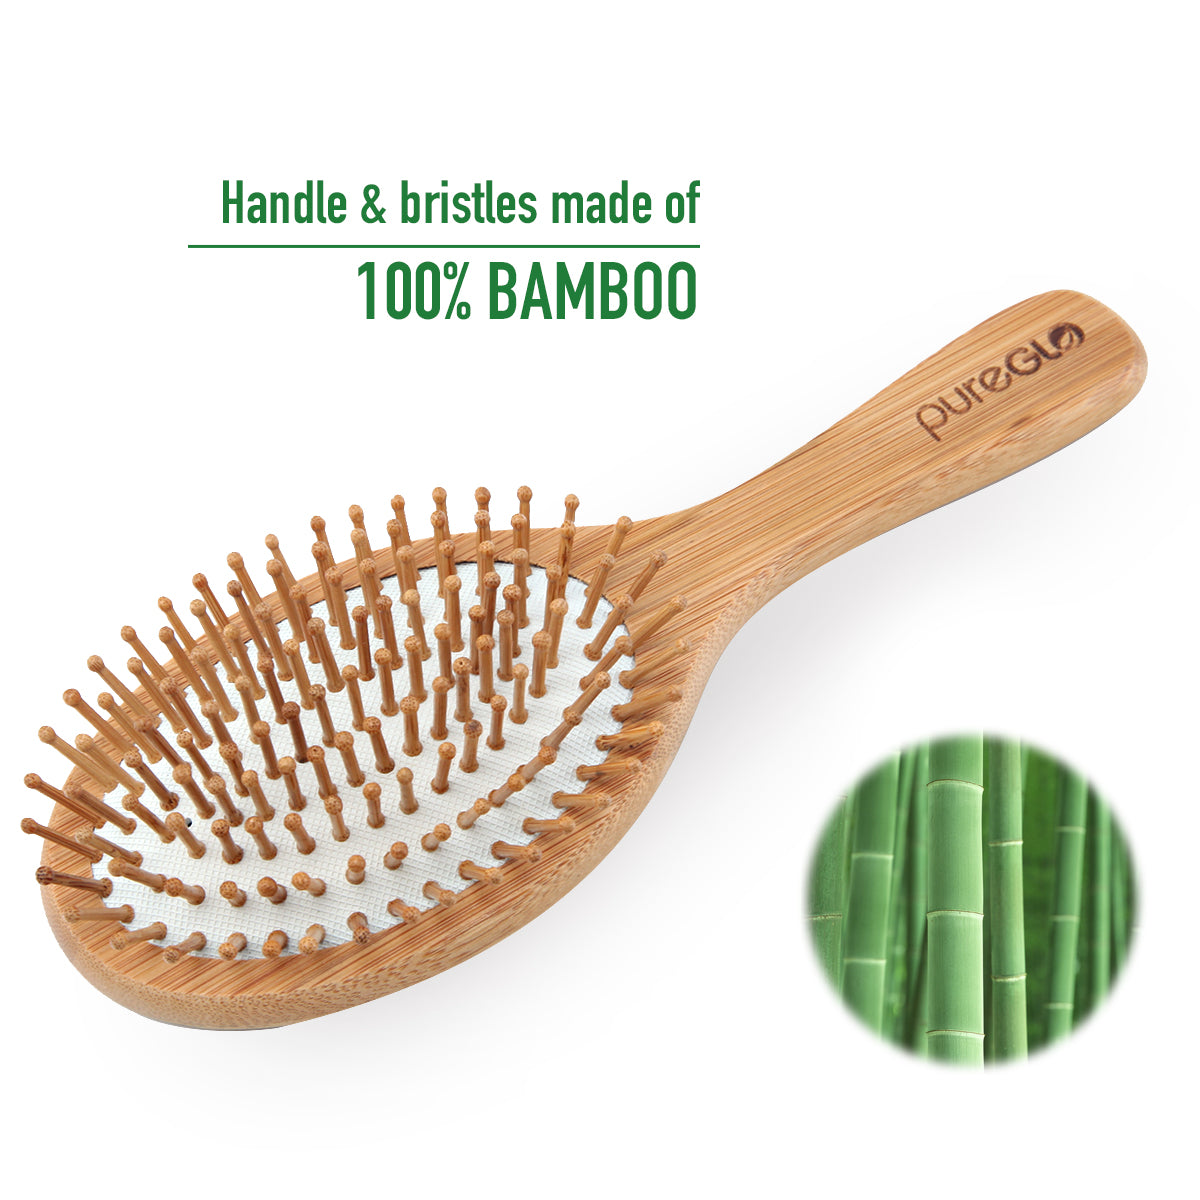 bambu_6483918cf483ed000102d88a Bambu All-Purpose Brush